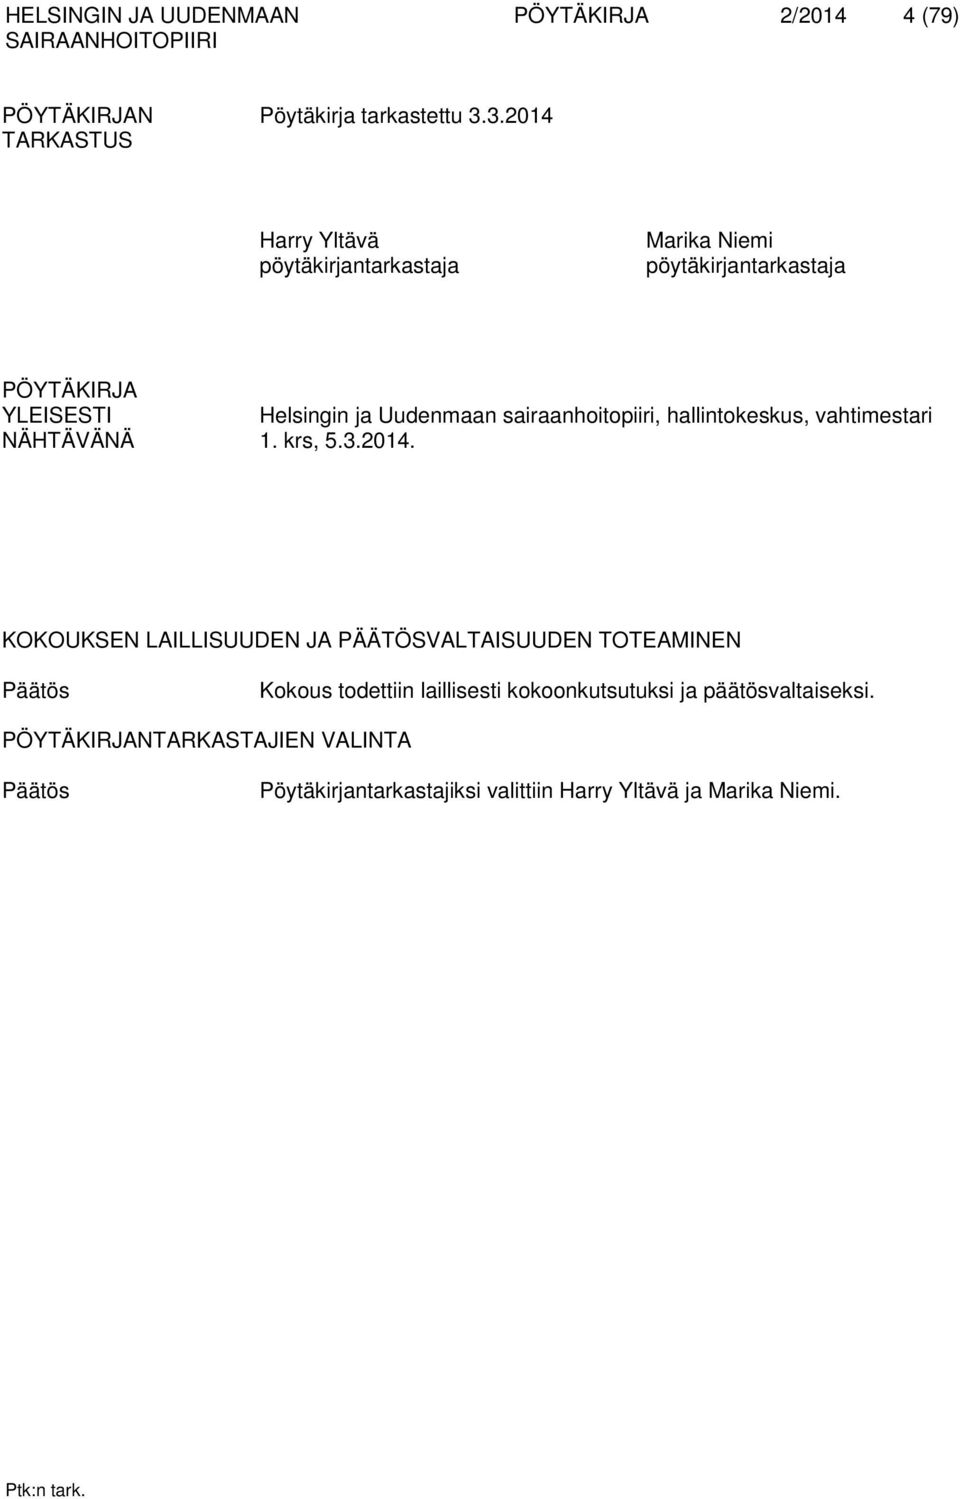 sairaanhoitopiiri, hallintokeskus, vahtimestari NÄHTÄVÄNÄ 1. krs, 5.3.2014.